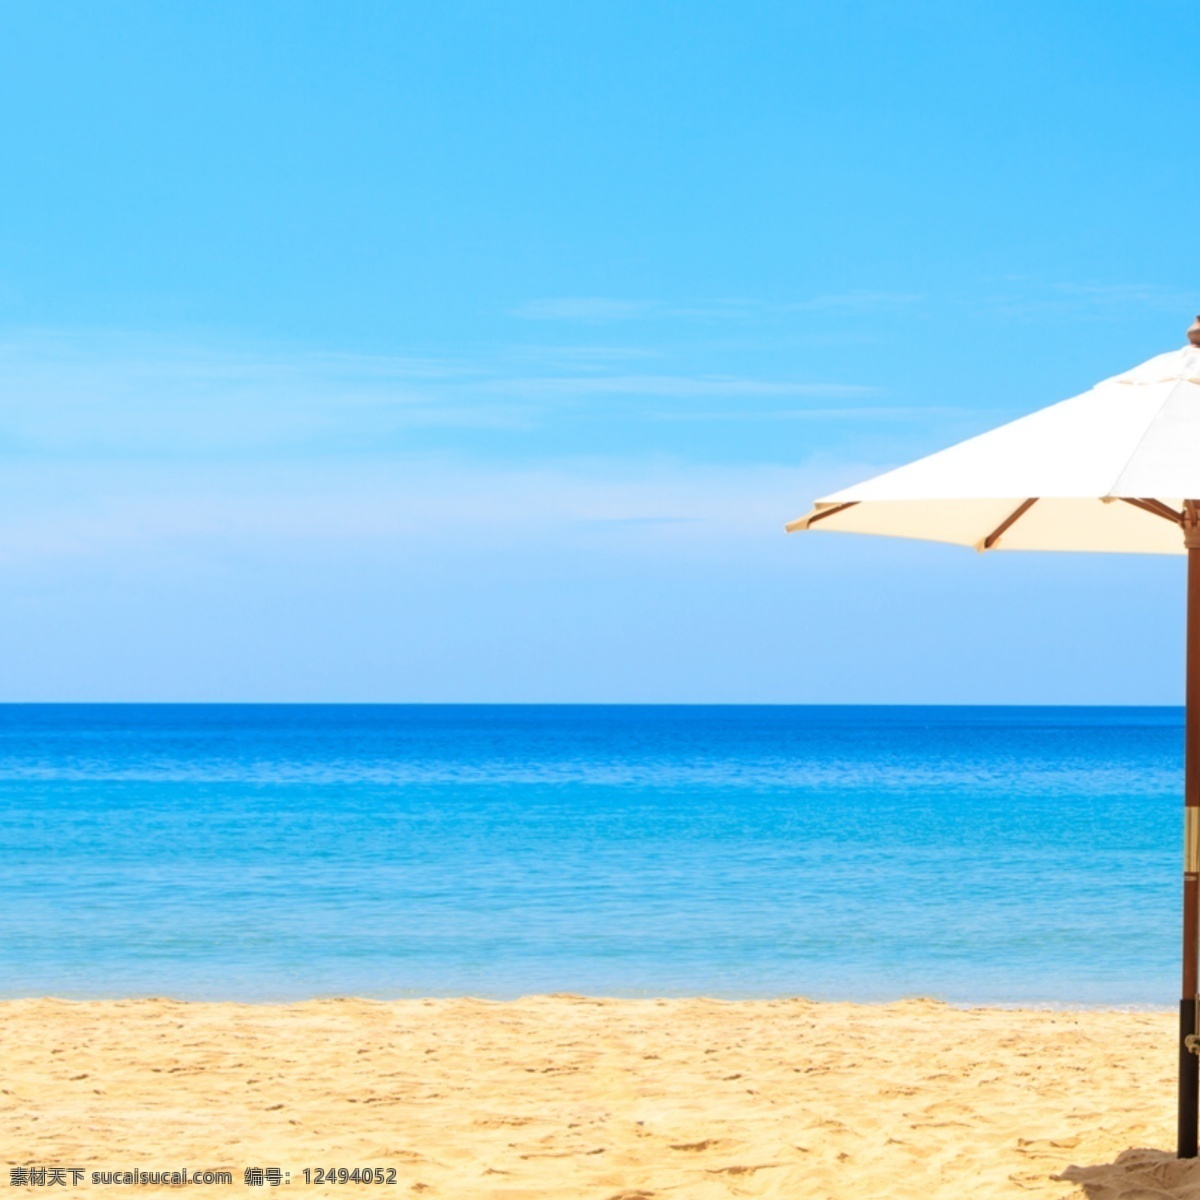 海滩摄影首图 海滩 太阳伞 青色 天蓝色